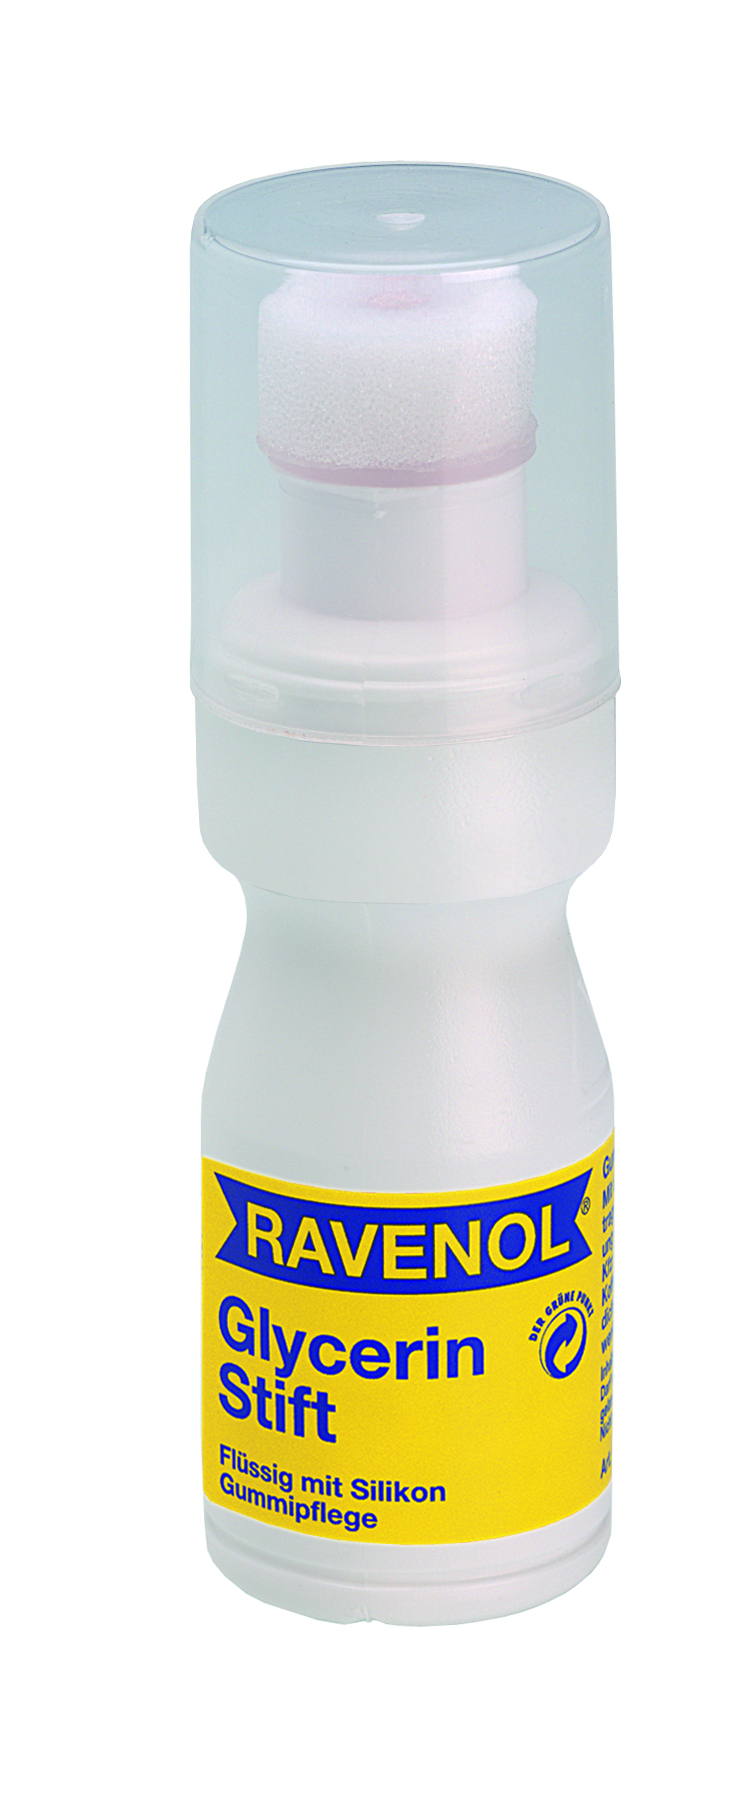 Купить запчасть RAVENOL - 4014835712898 Карандаш-уход за РТИ глицериновый Glycerin Stift (50мл)